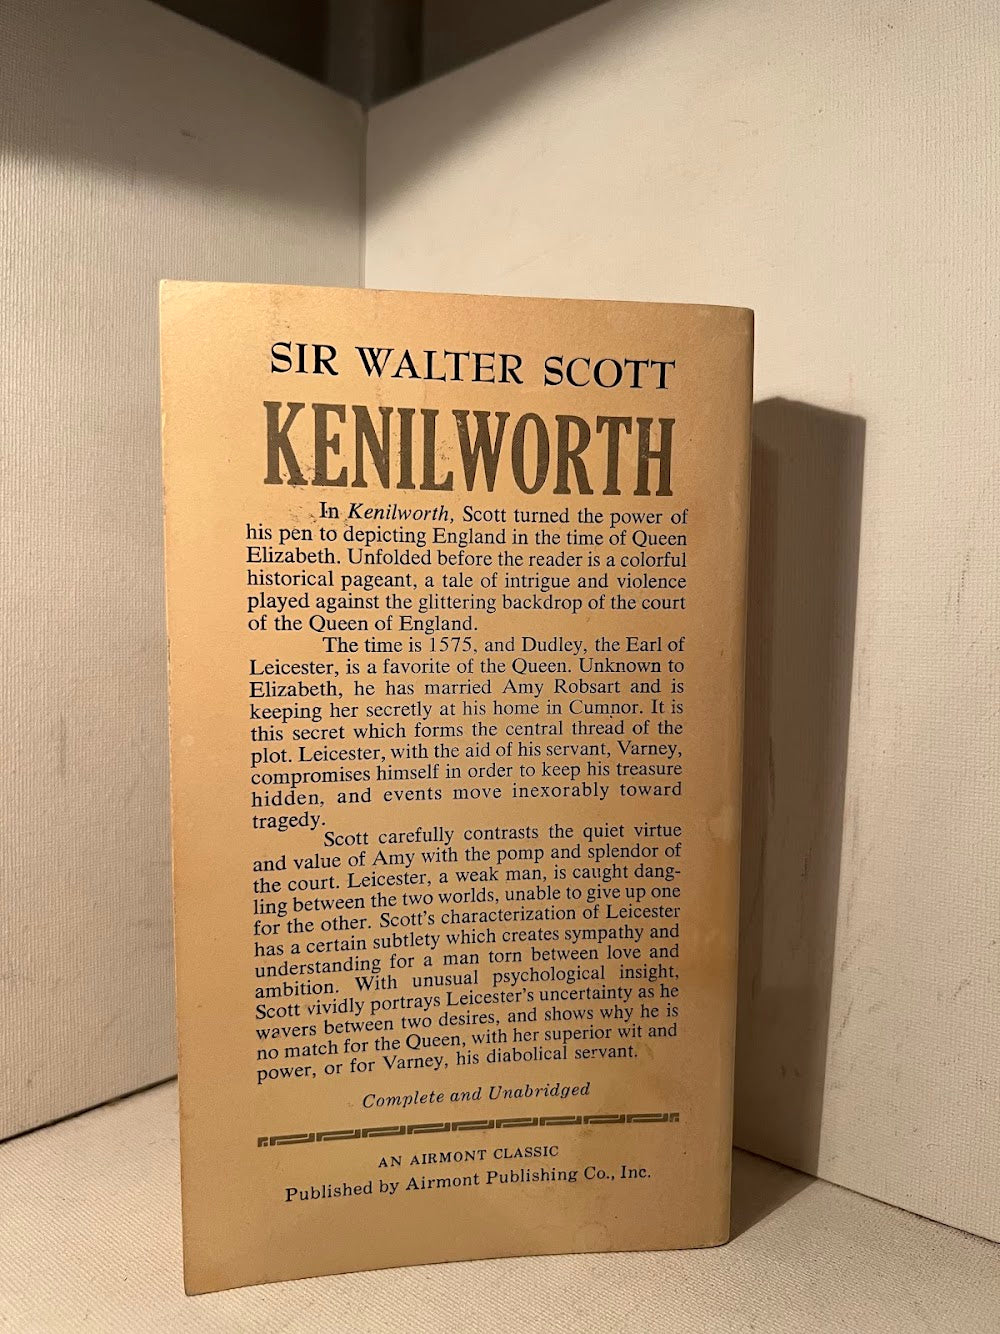 Kenilworth by Sir Walter Scott